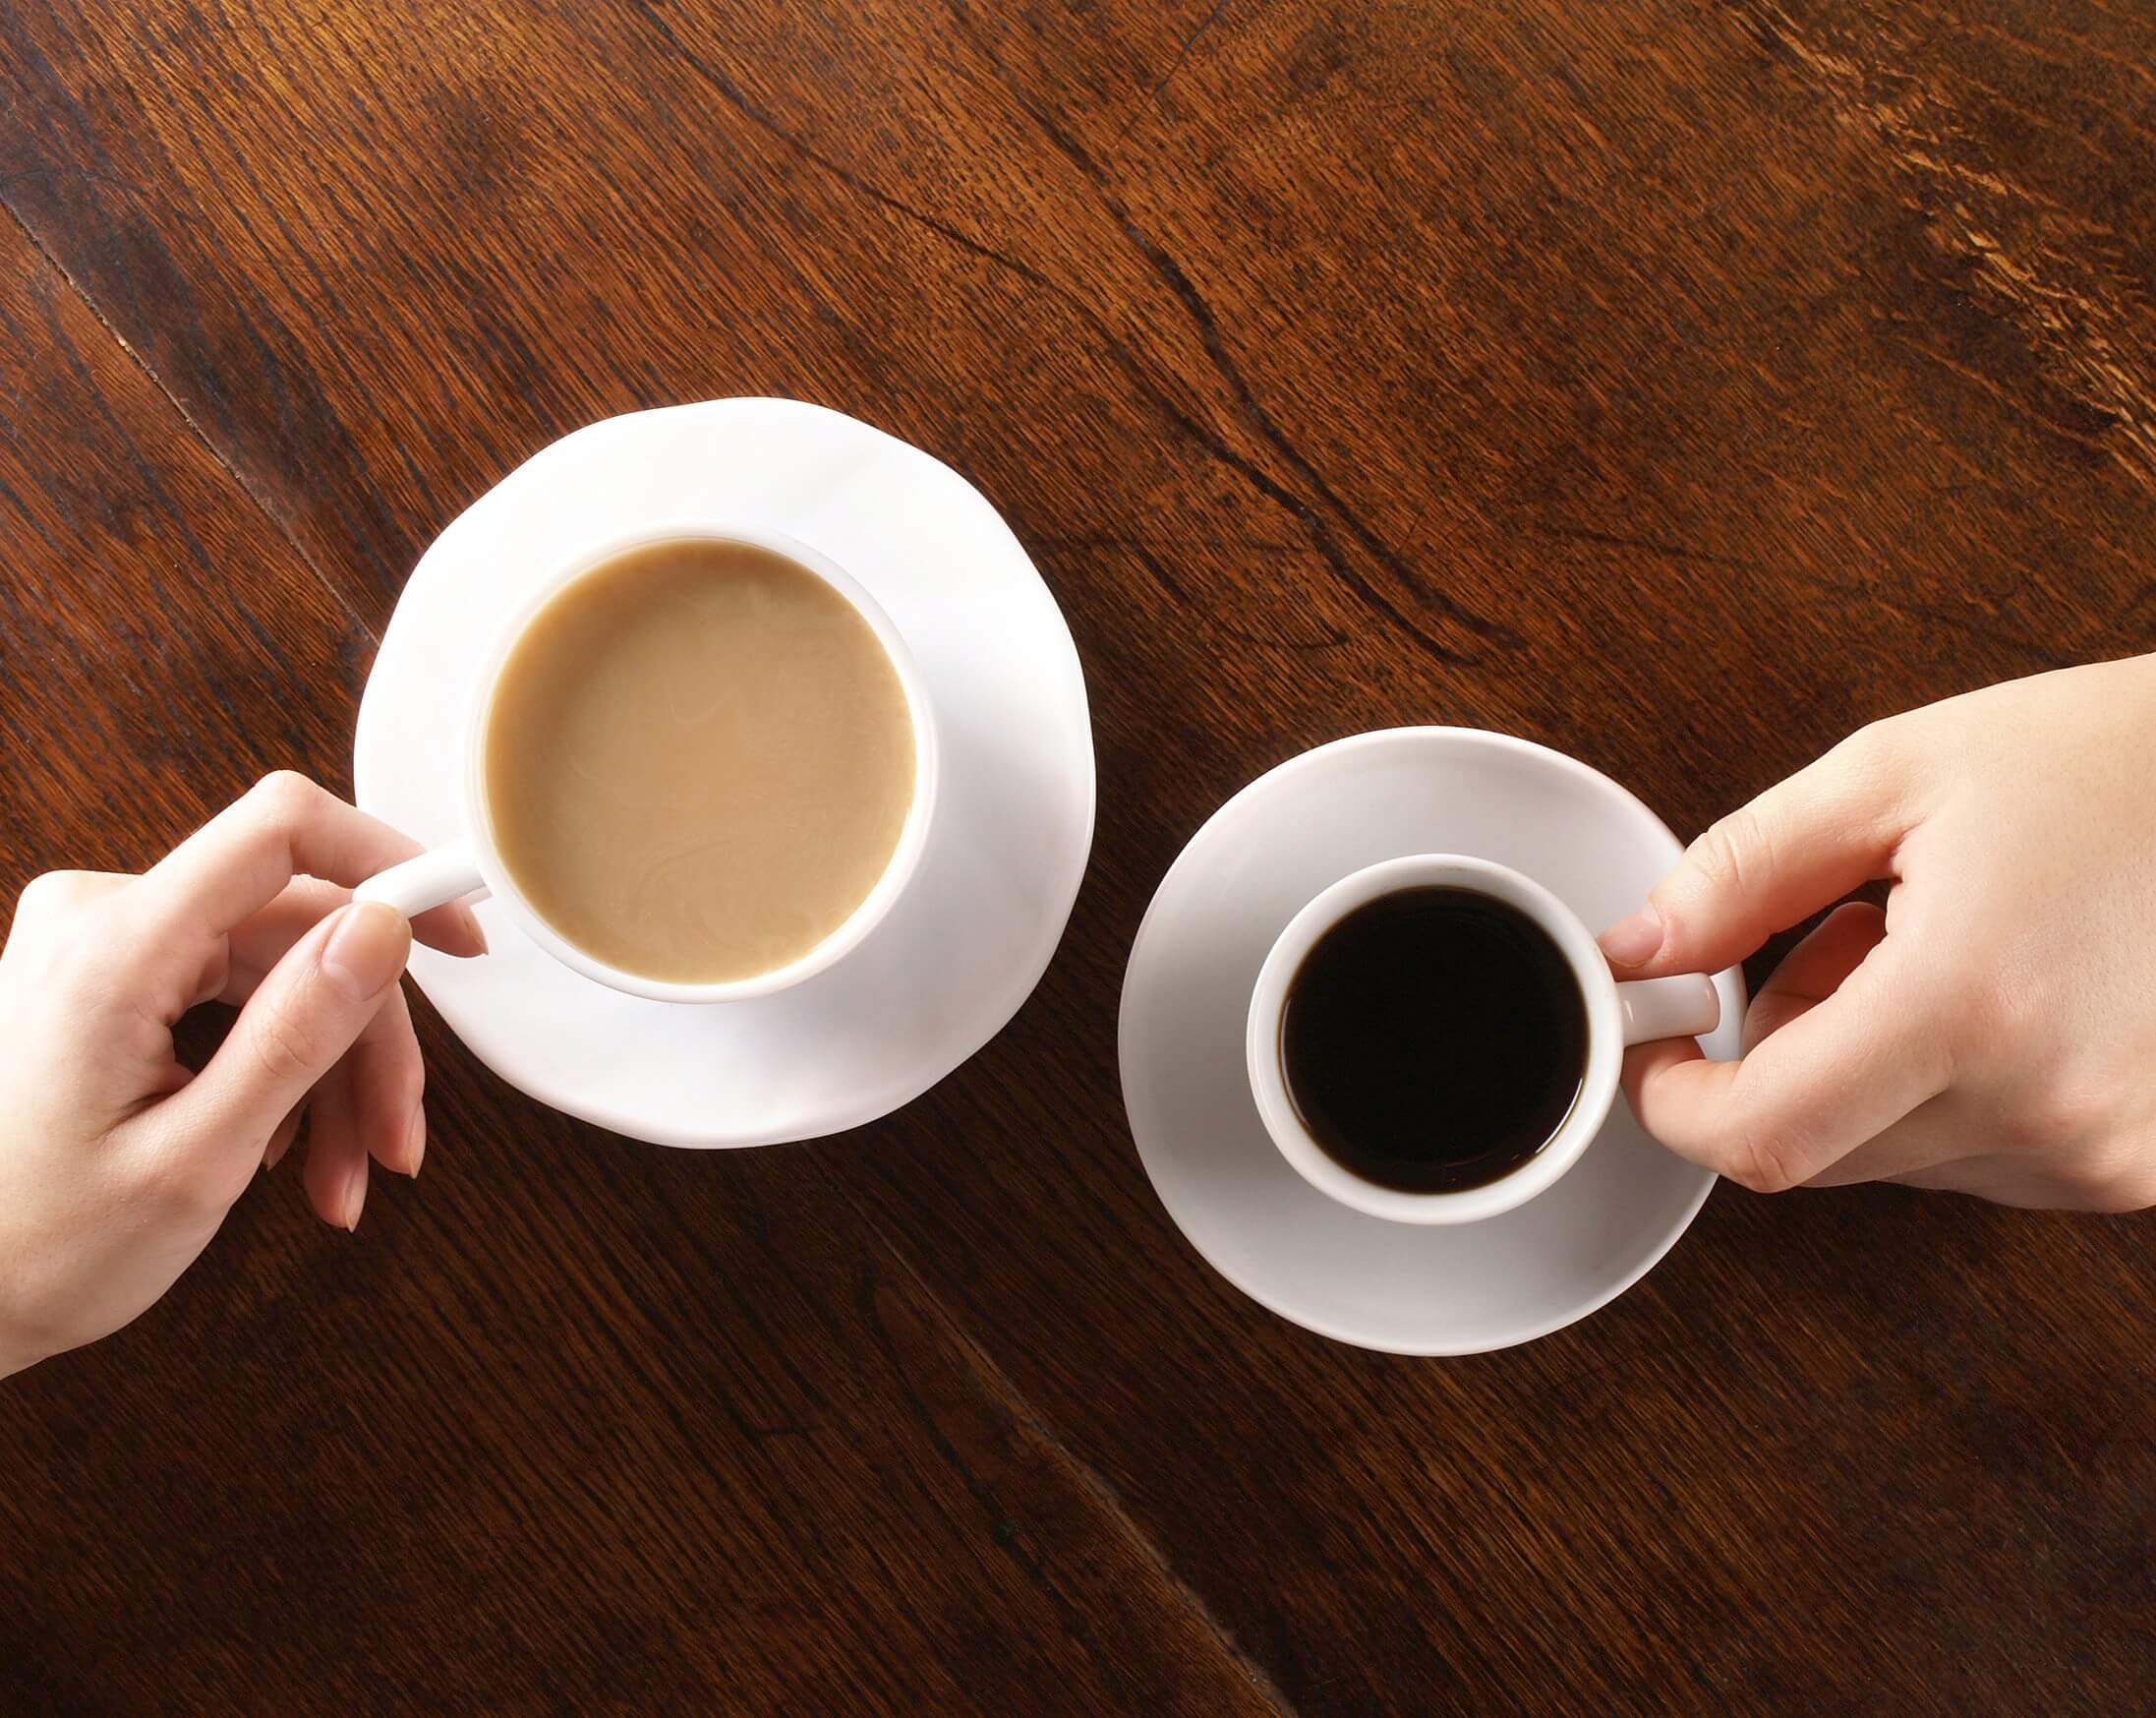 Que o mais útil — chá ou café? 6 fatos sobre o chá, que você não sabia